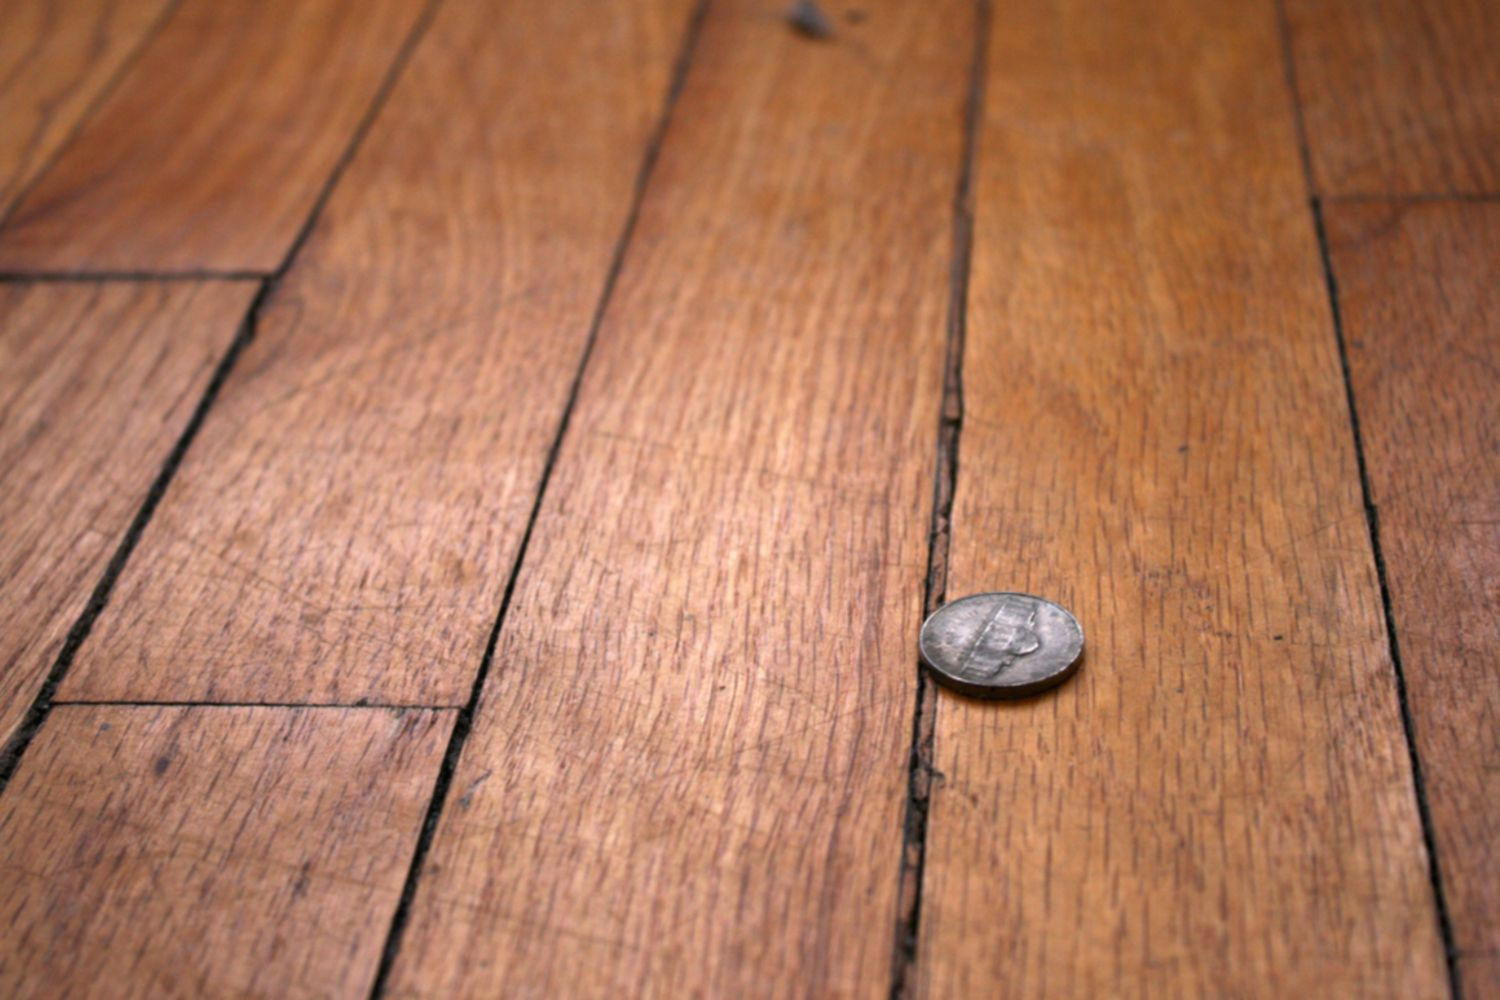 27 Lovely Hardwood Floor Repair Refinishing 2024 free download hardwood floor repair refinishing of how to repair gaps between floorboards pertaining to wood floor with gaps between boards 1500 x 1000 56a49eb25f9b58b7d0d7df8d